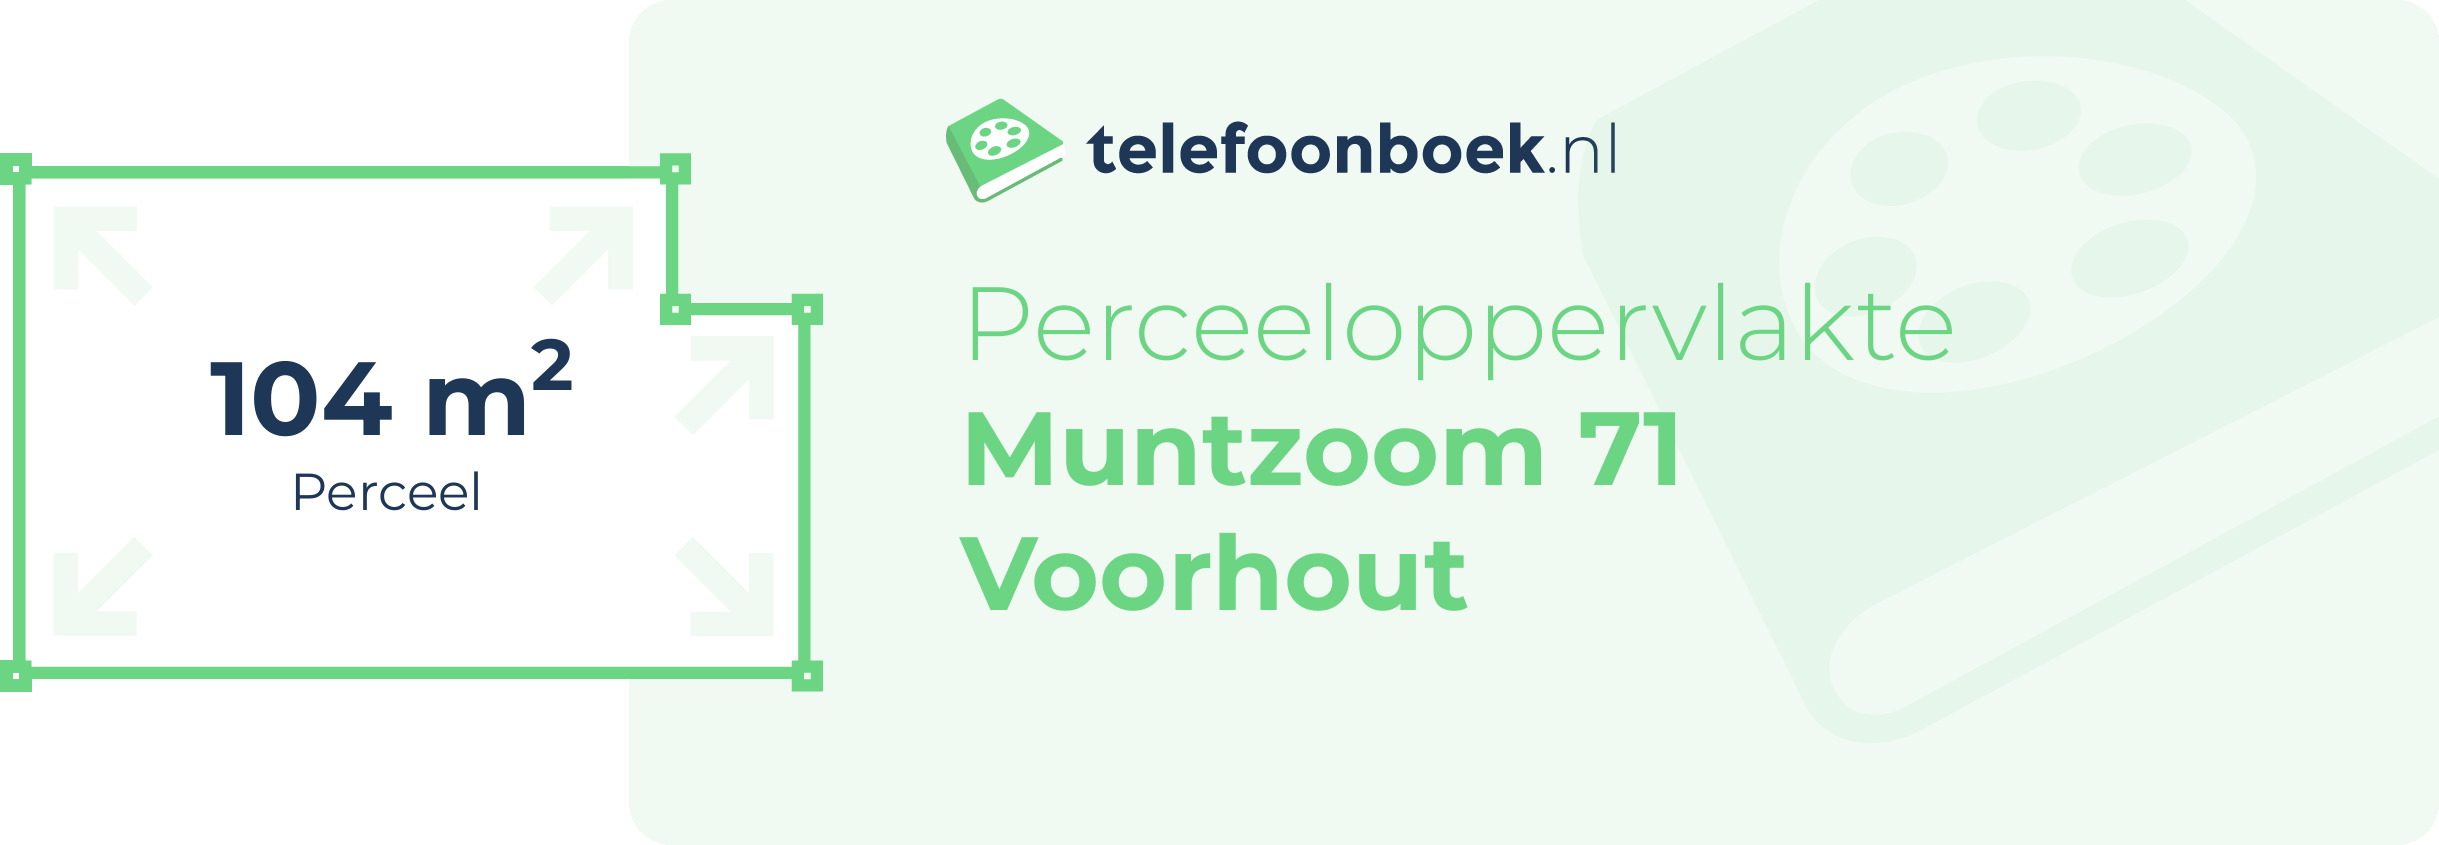 Perceeloppervlakte Muntzoom 71 Voorhout